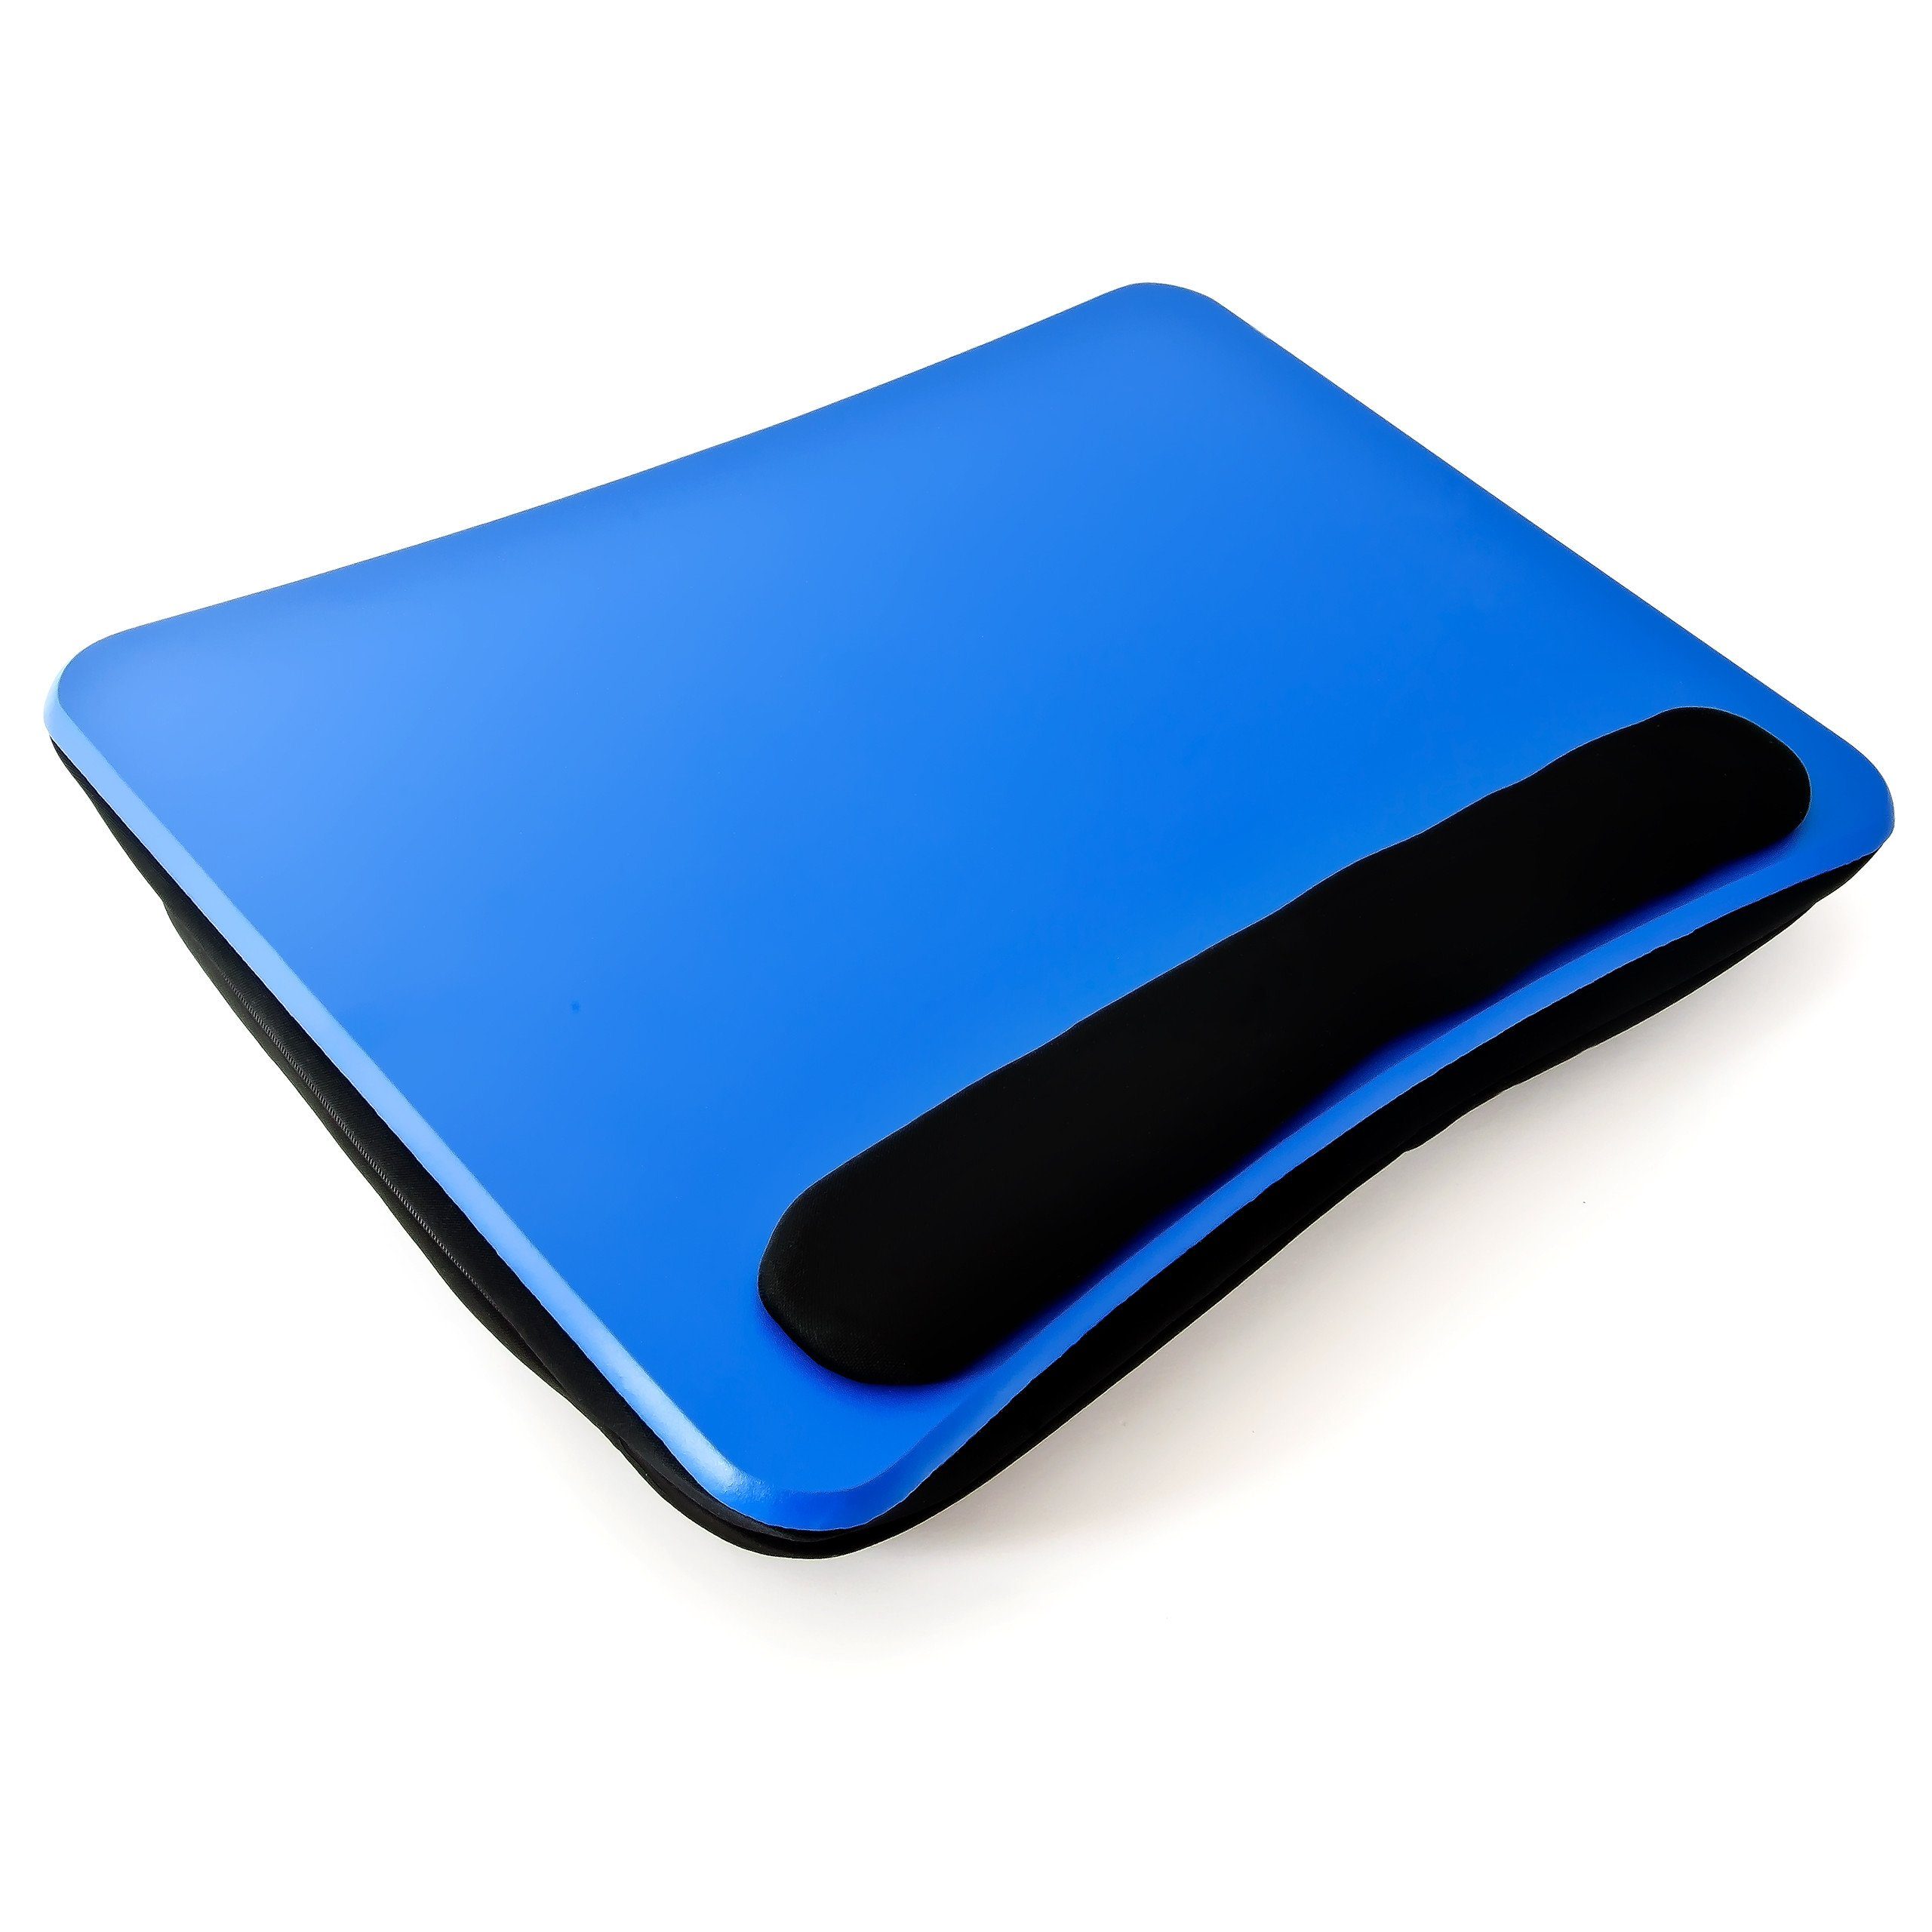 relaxdays Laptop Tablett Laptopkissen mit Handauflage Blau, Faserplatte